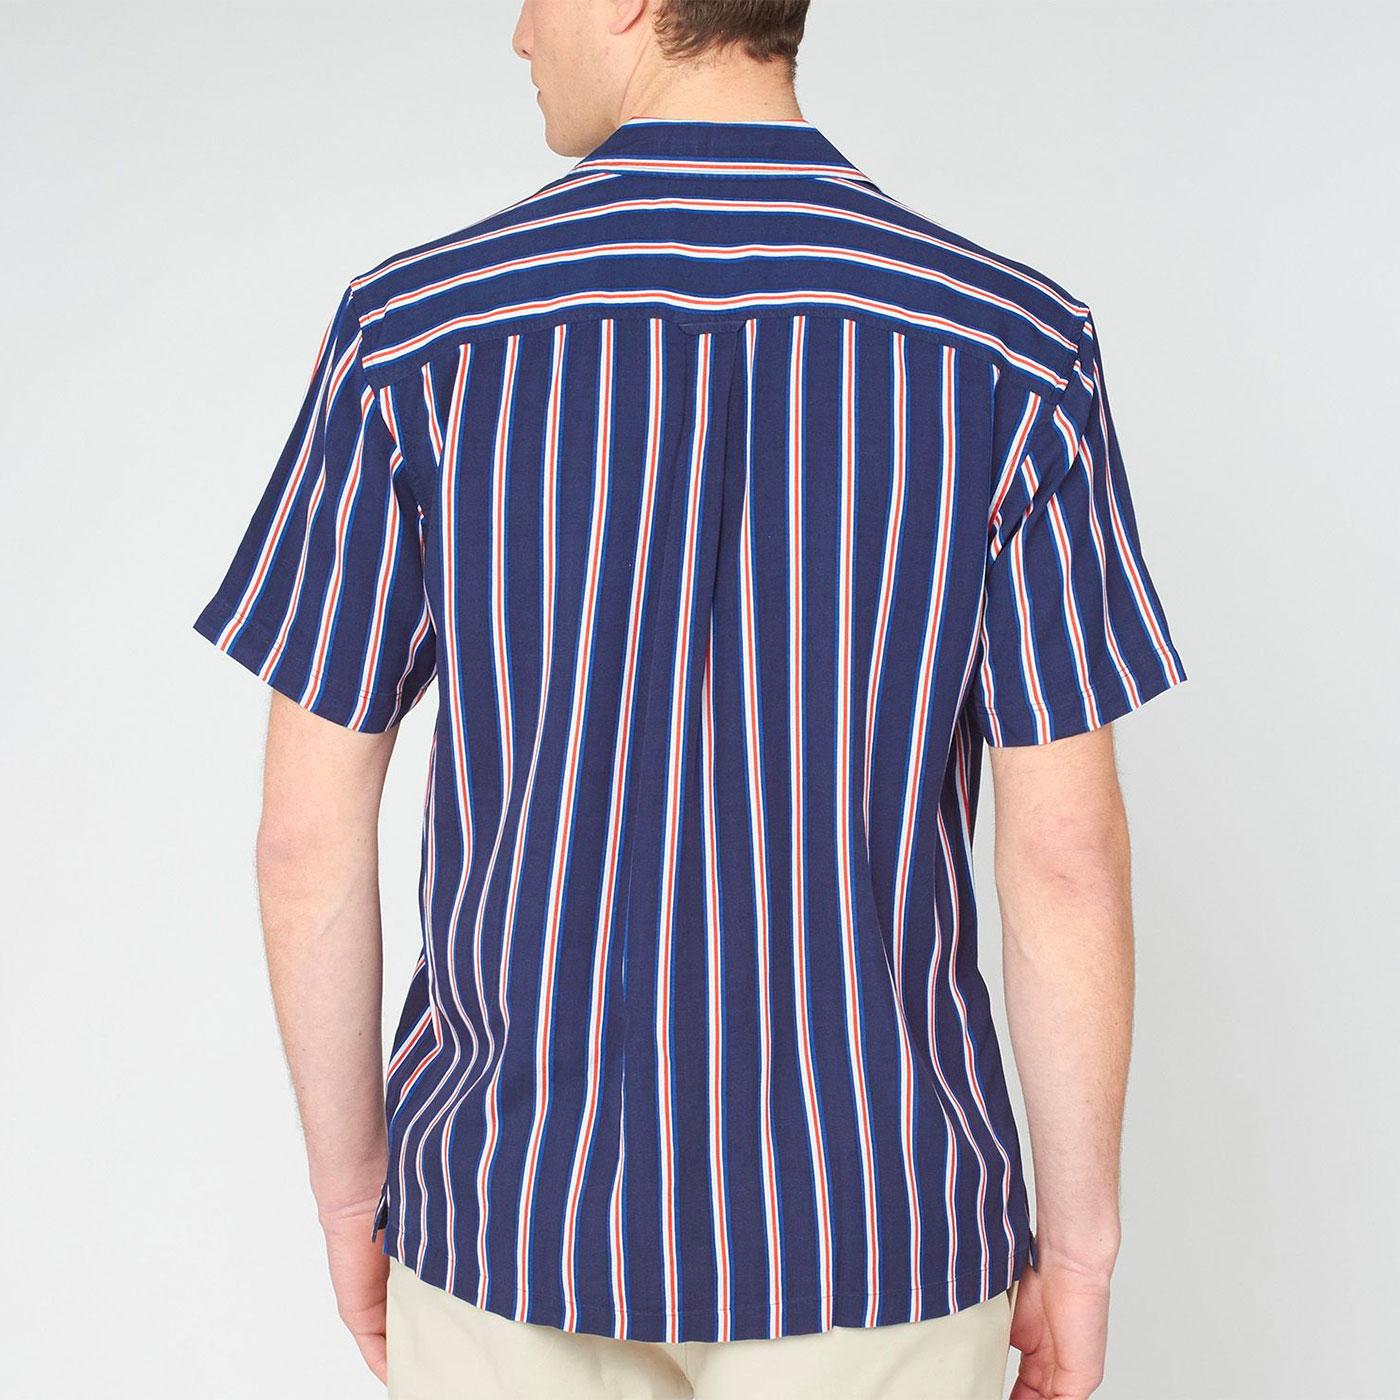 BEN SHERMAN x Team GB Olympics Resort Collar Stripe Shirt